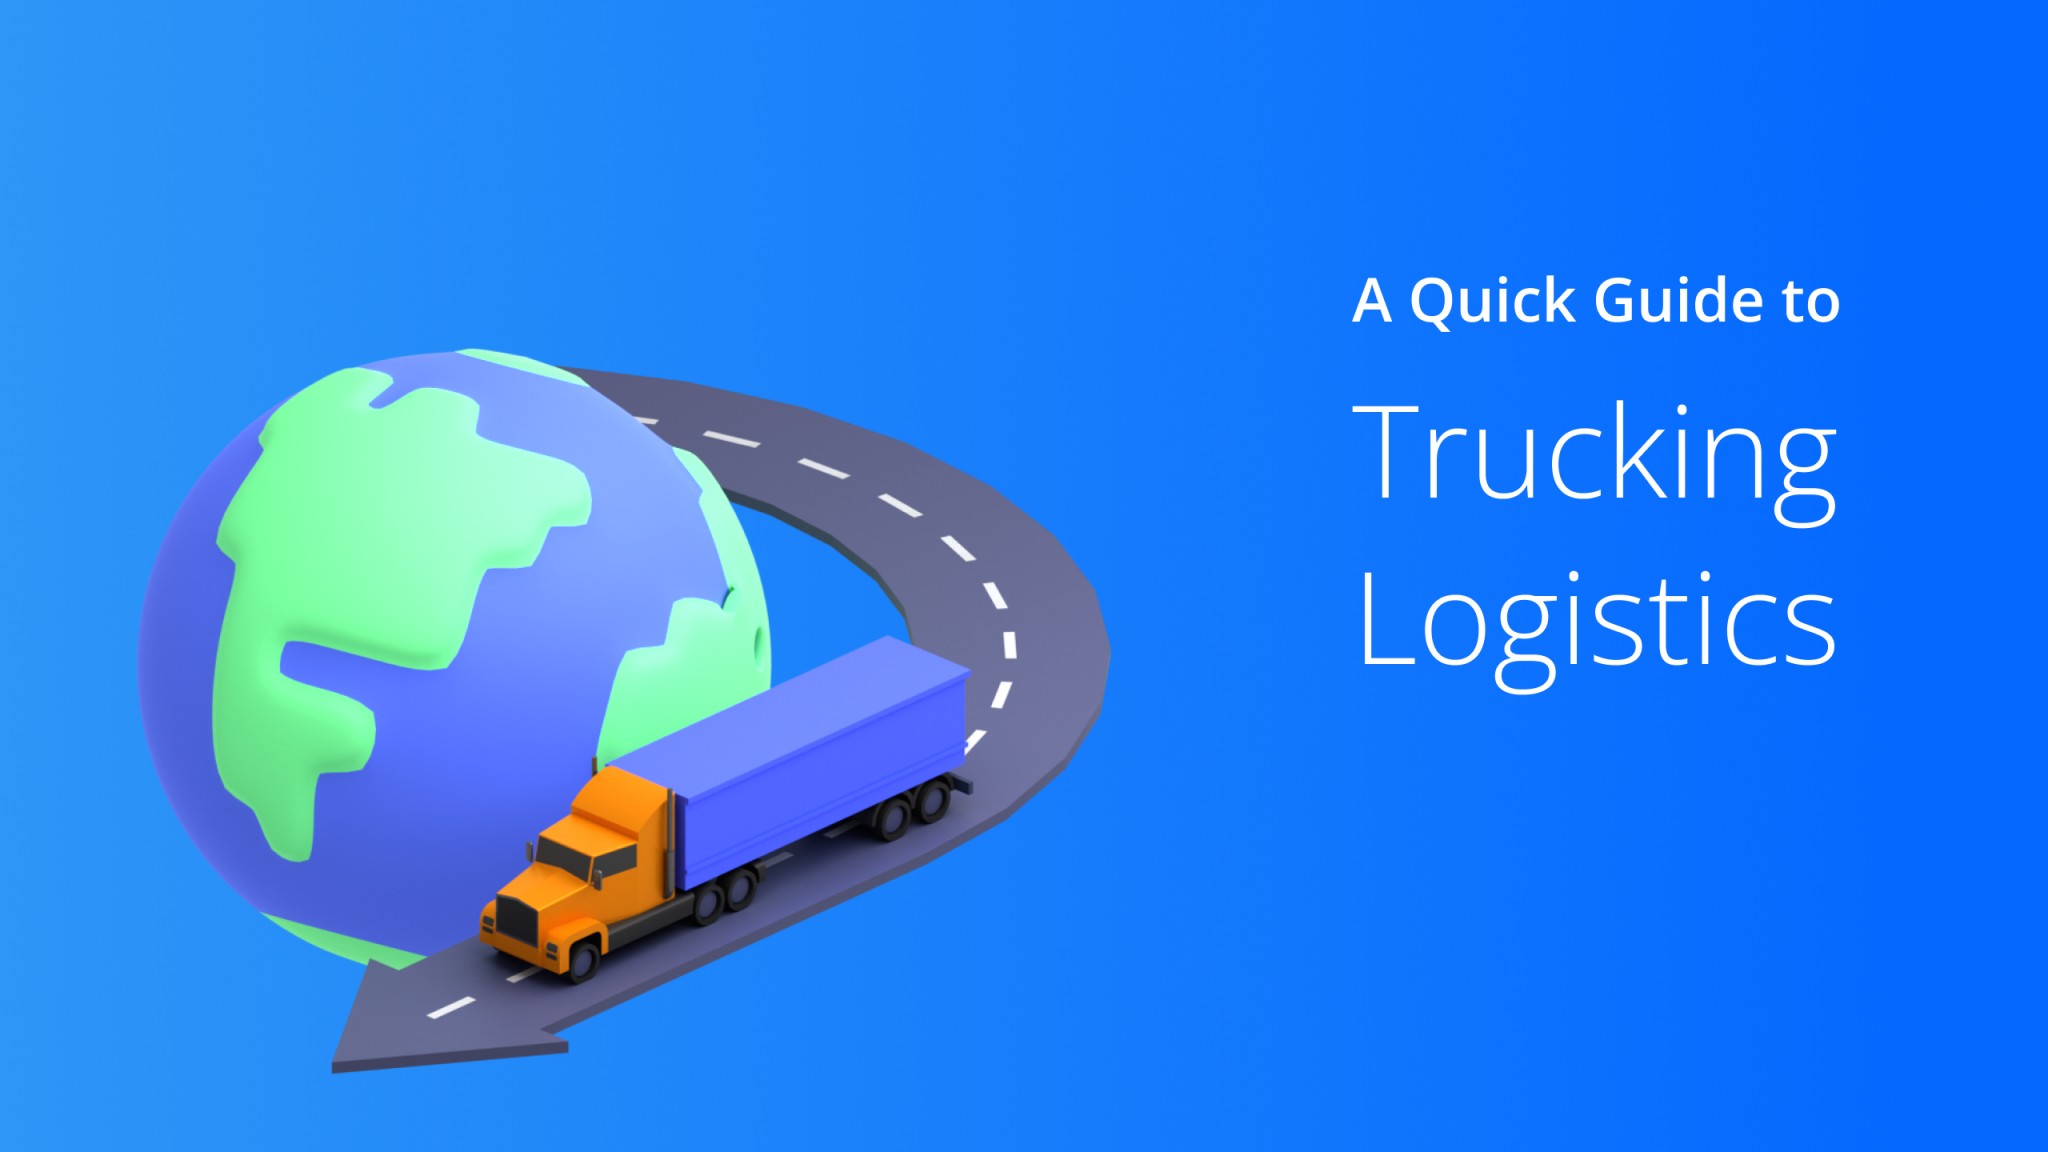 D2169313 A Quick Guiode To Trucking Logistics 2048x1152 